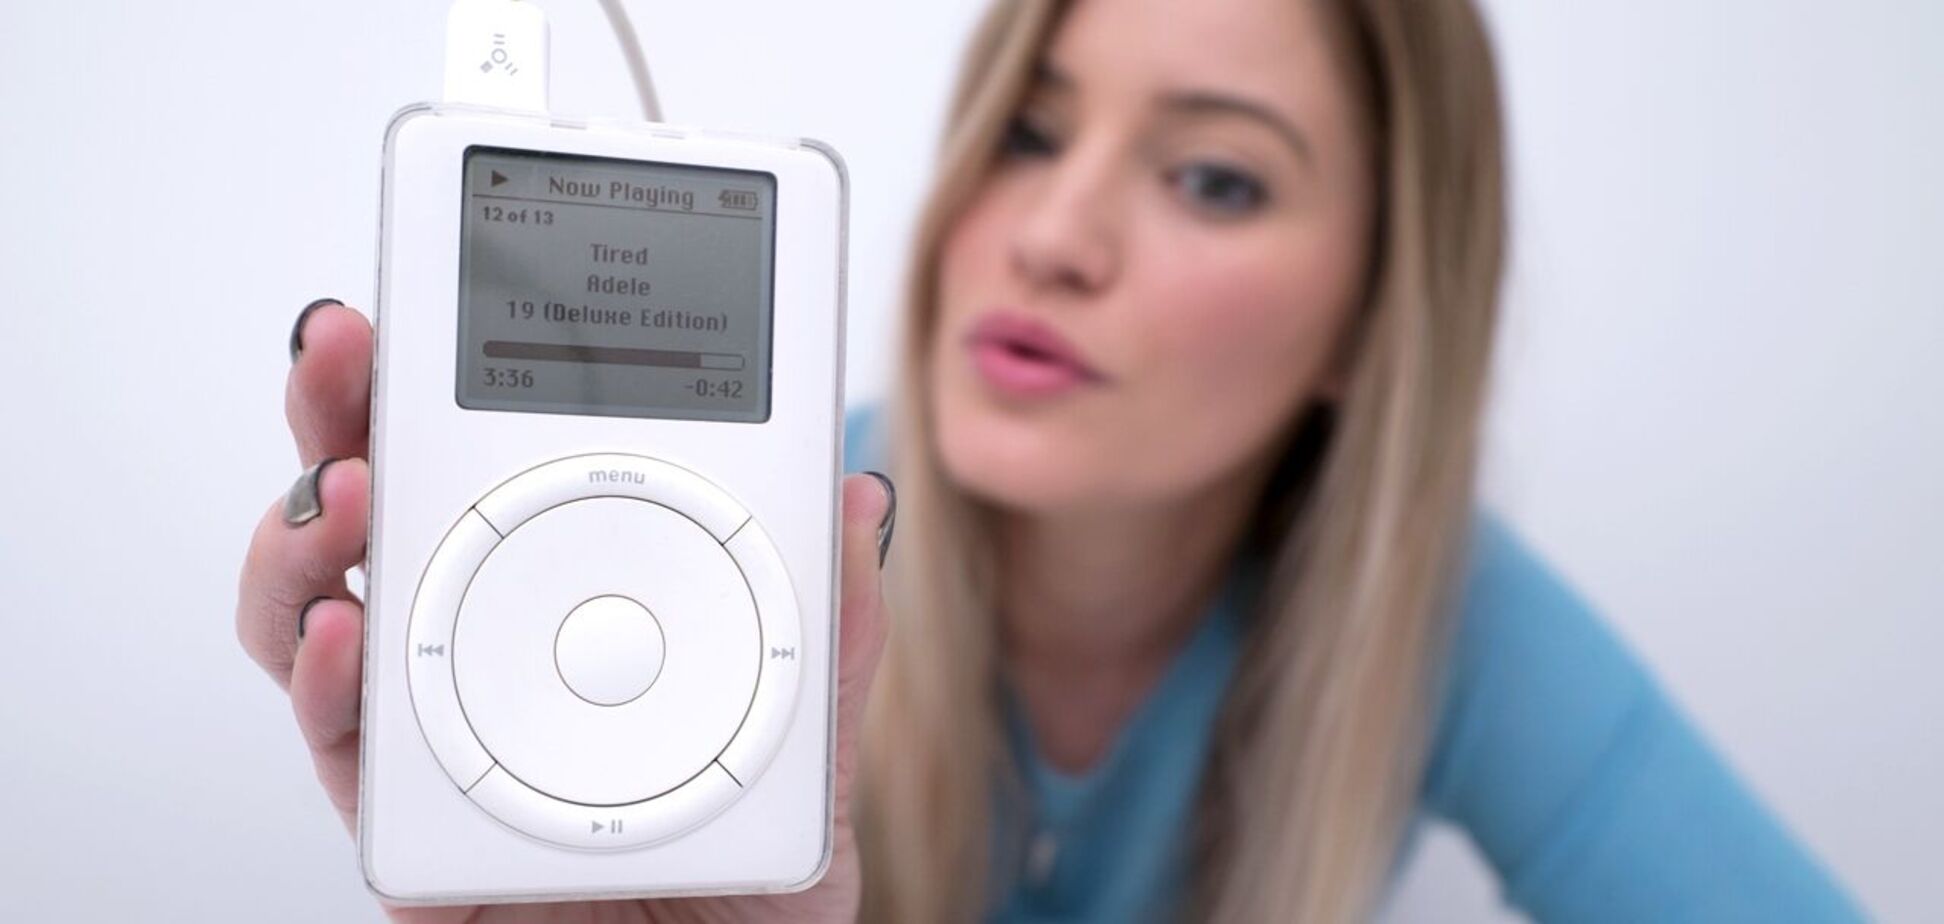 Объем диска первого iPod составлял пять гигабайтов